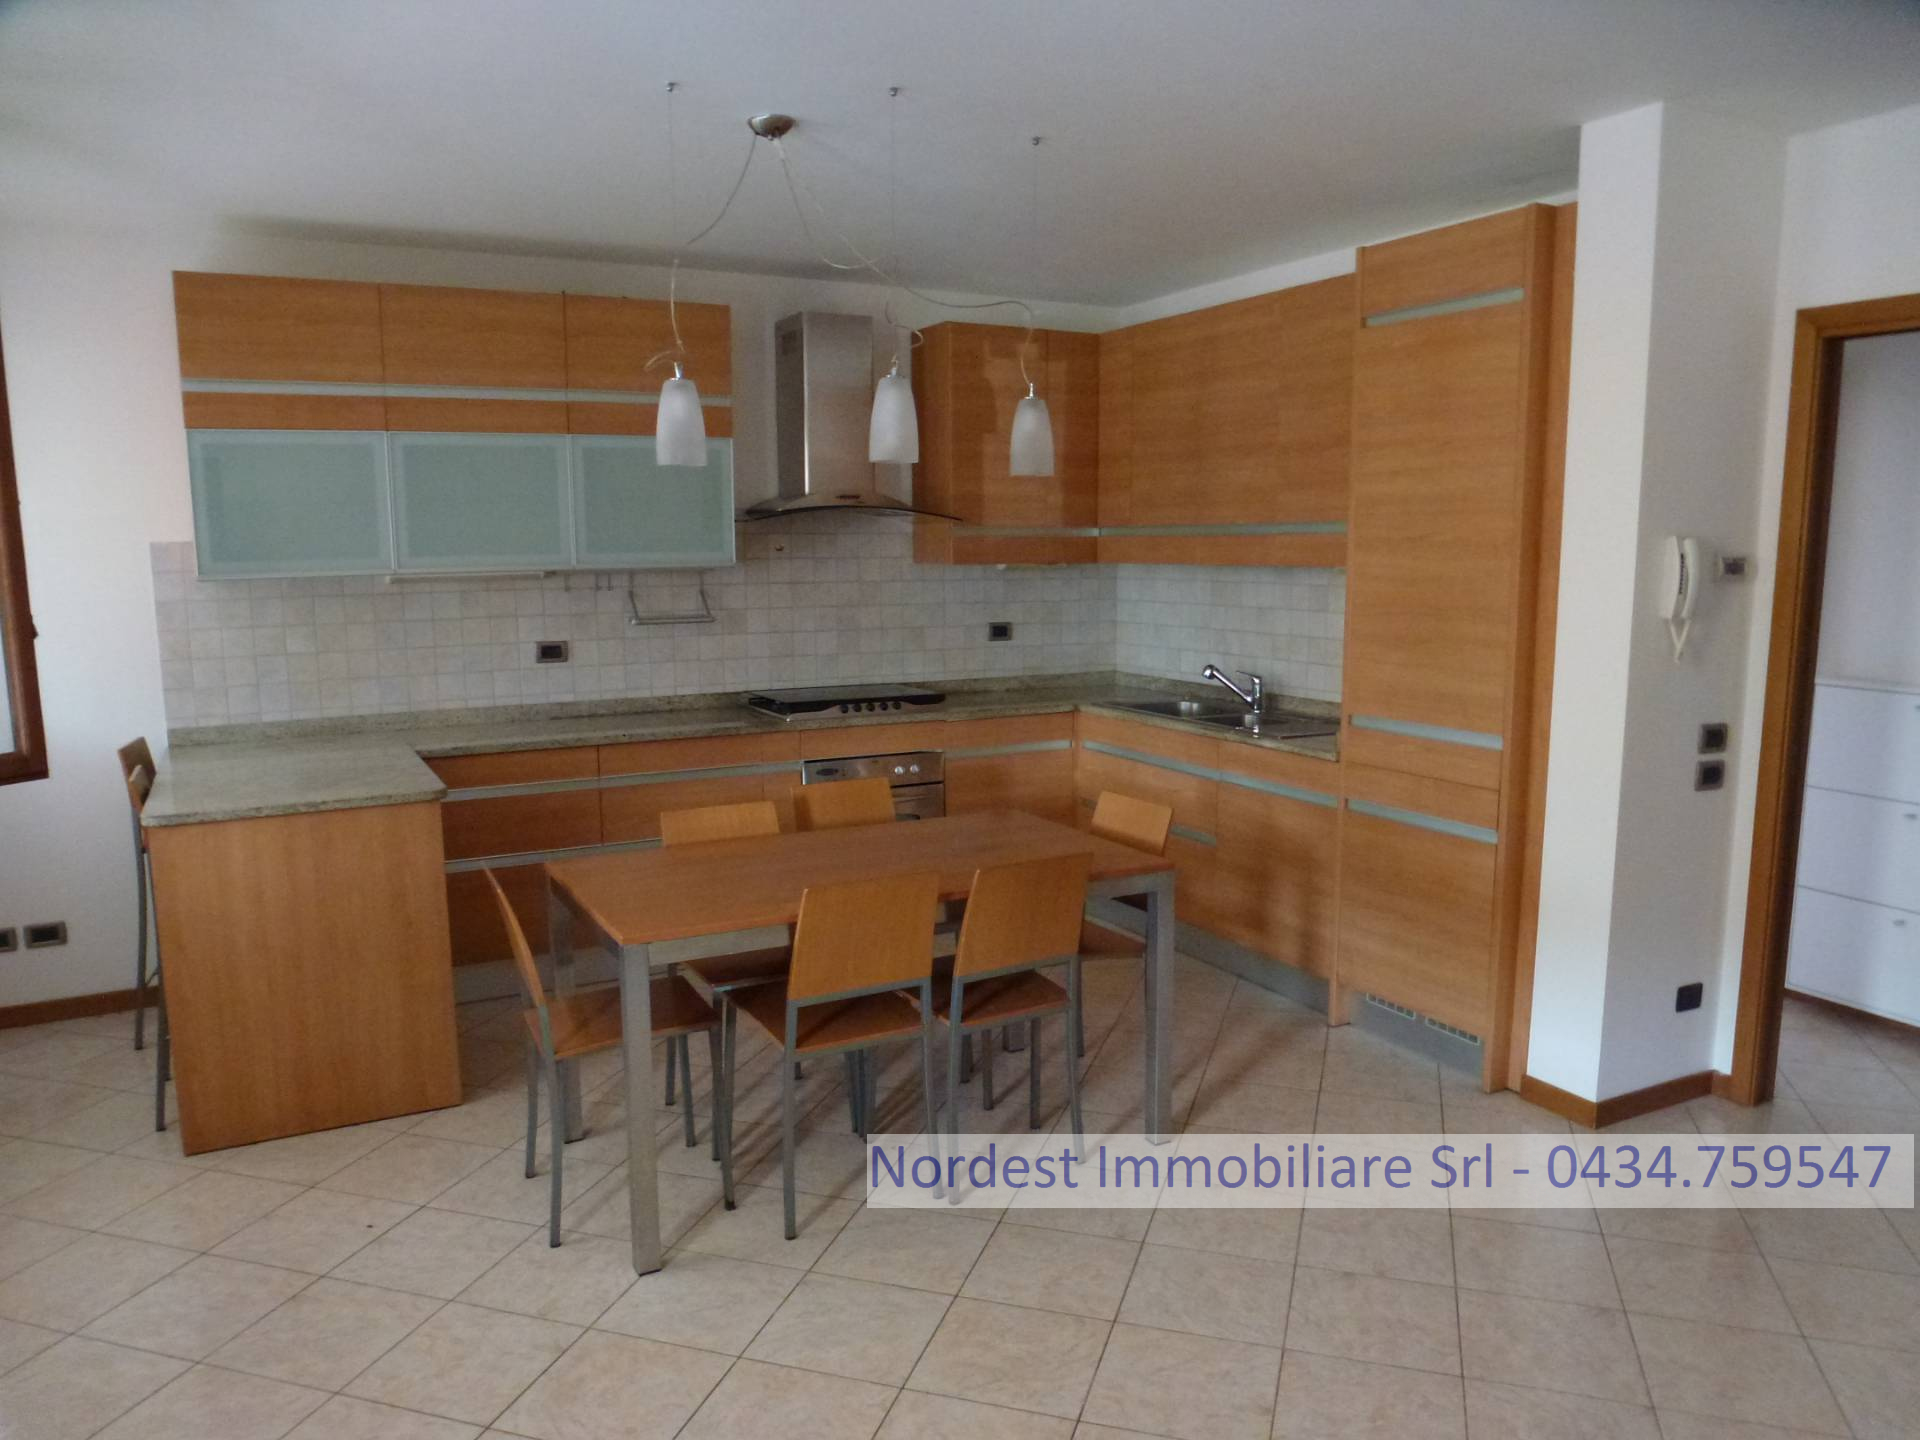 Appartamento in vendita a Codognè, 4 locali, Trattative riservate | CambioCasa.it